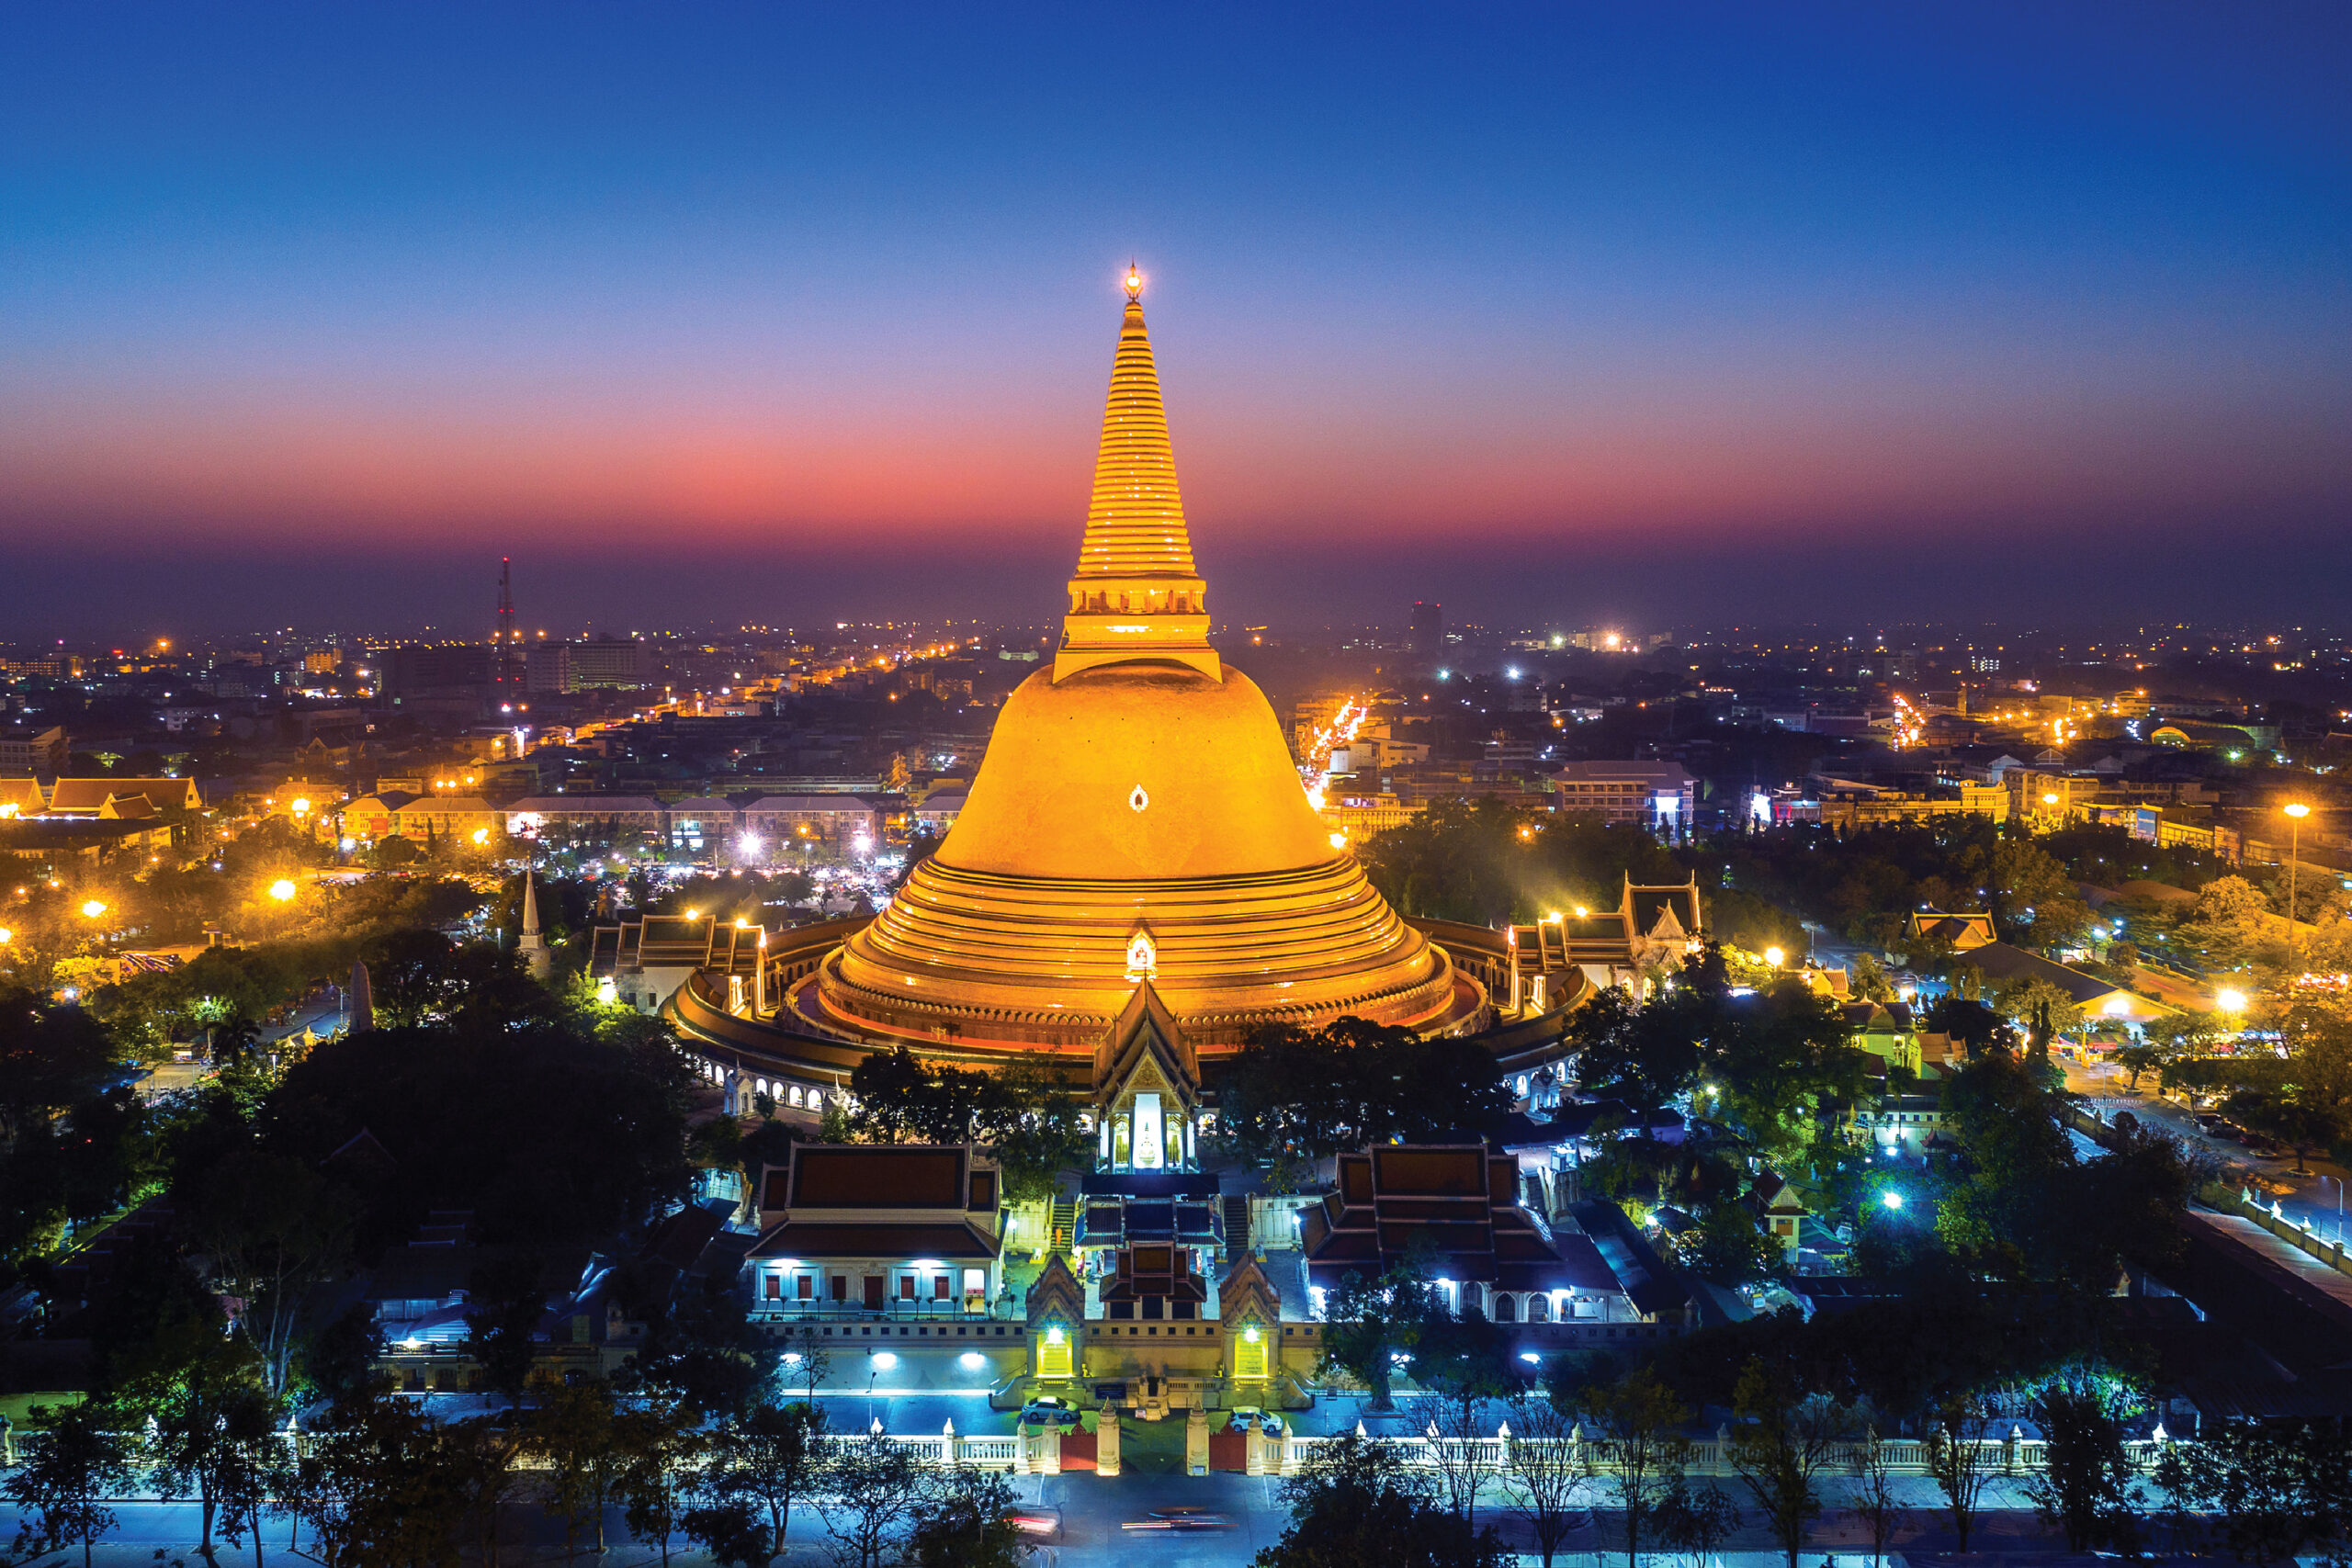 The Phra Pathommachedi, a Massive Pagoda in Nakhon Pathom